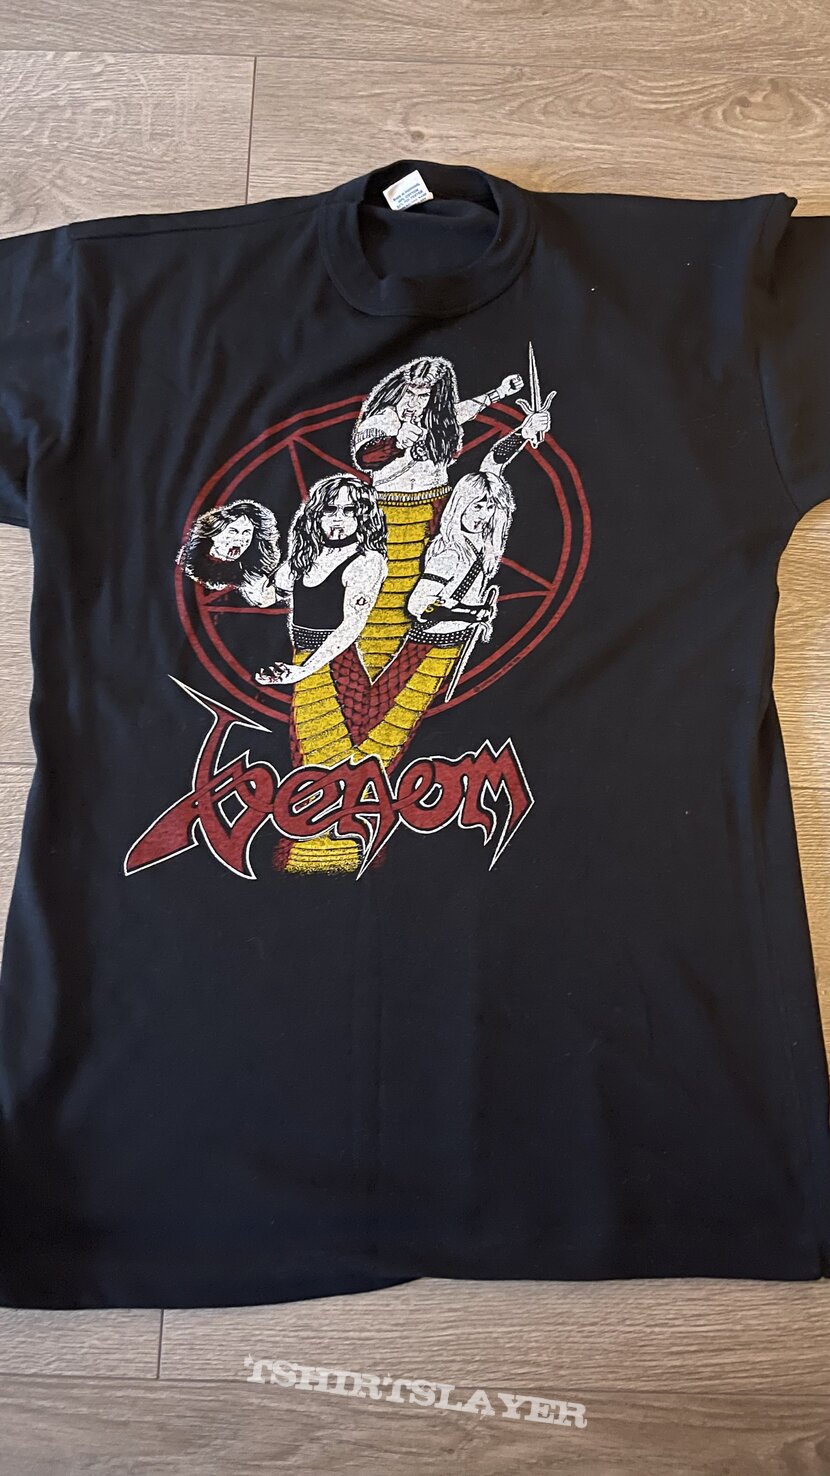 Venom tour shirt